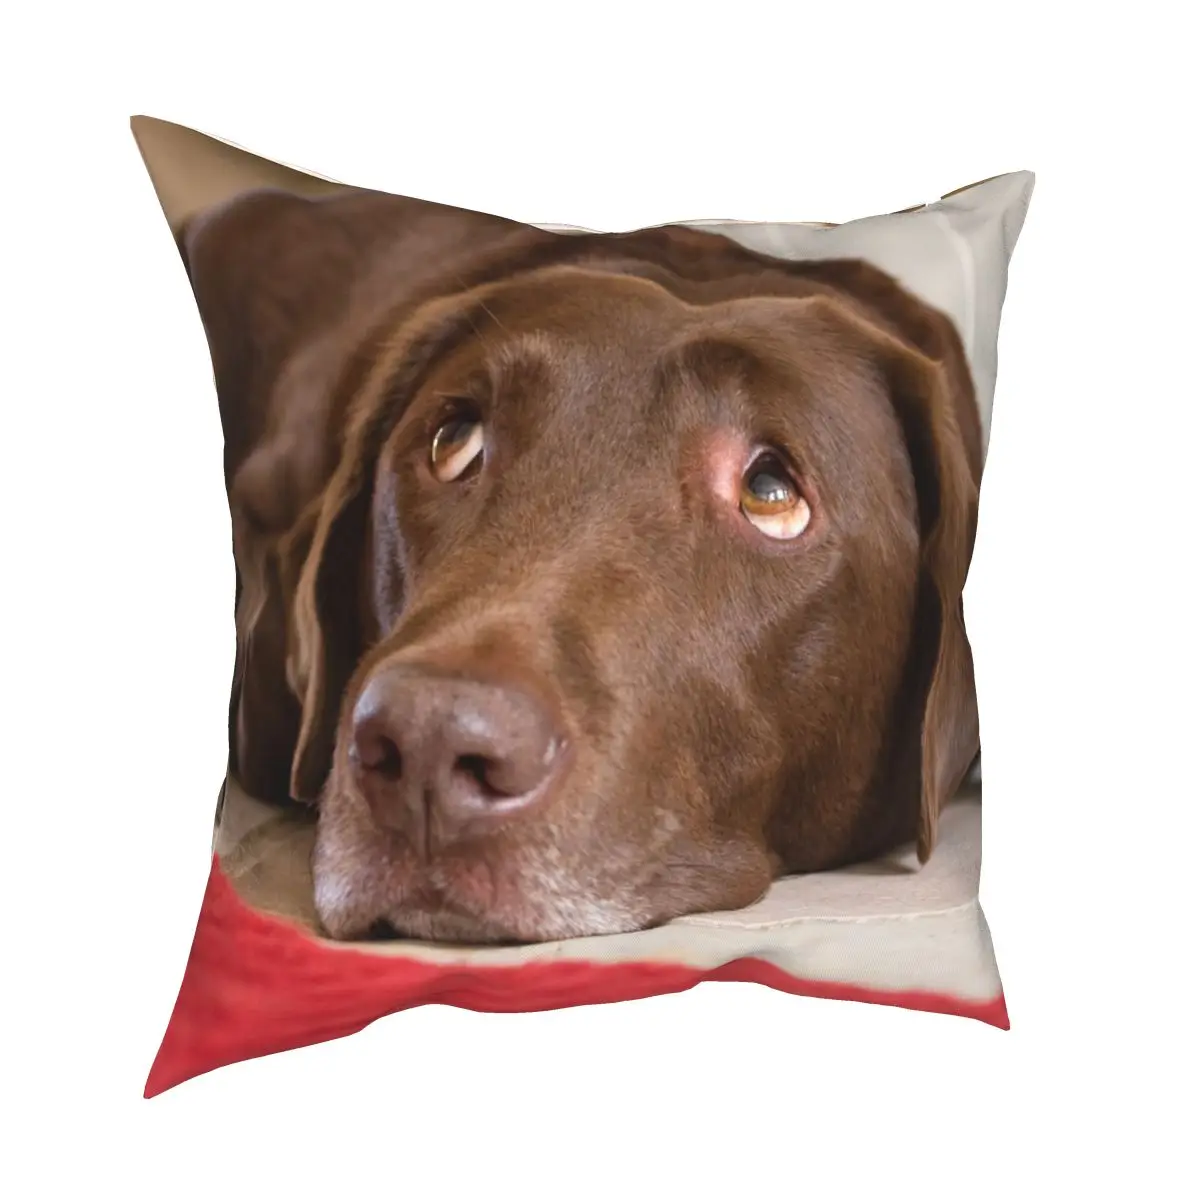 

Шоколадный лабрадор щенок наволочка с глазами Печатный чехол для подушки из полиэстера украшения для собак, скидка, накидка для подушки, де...